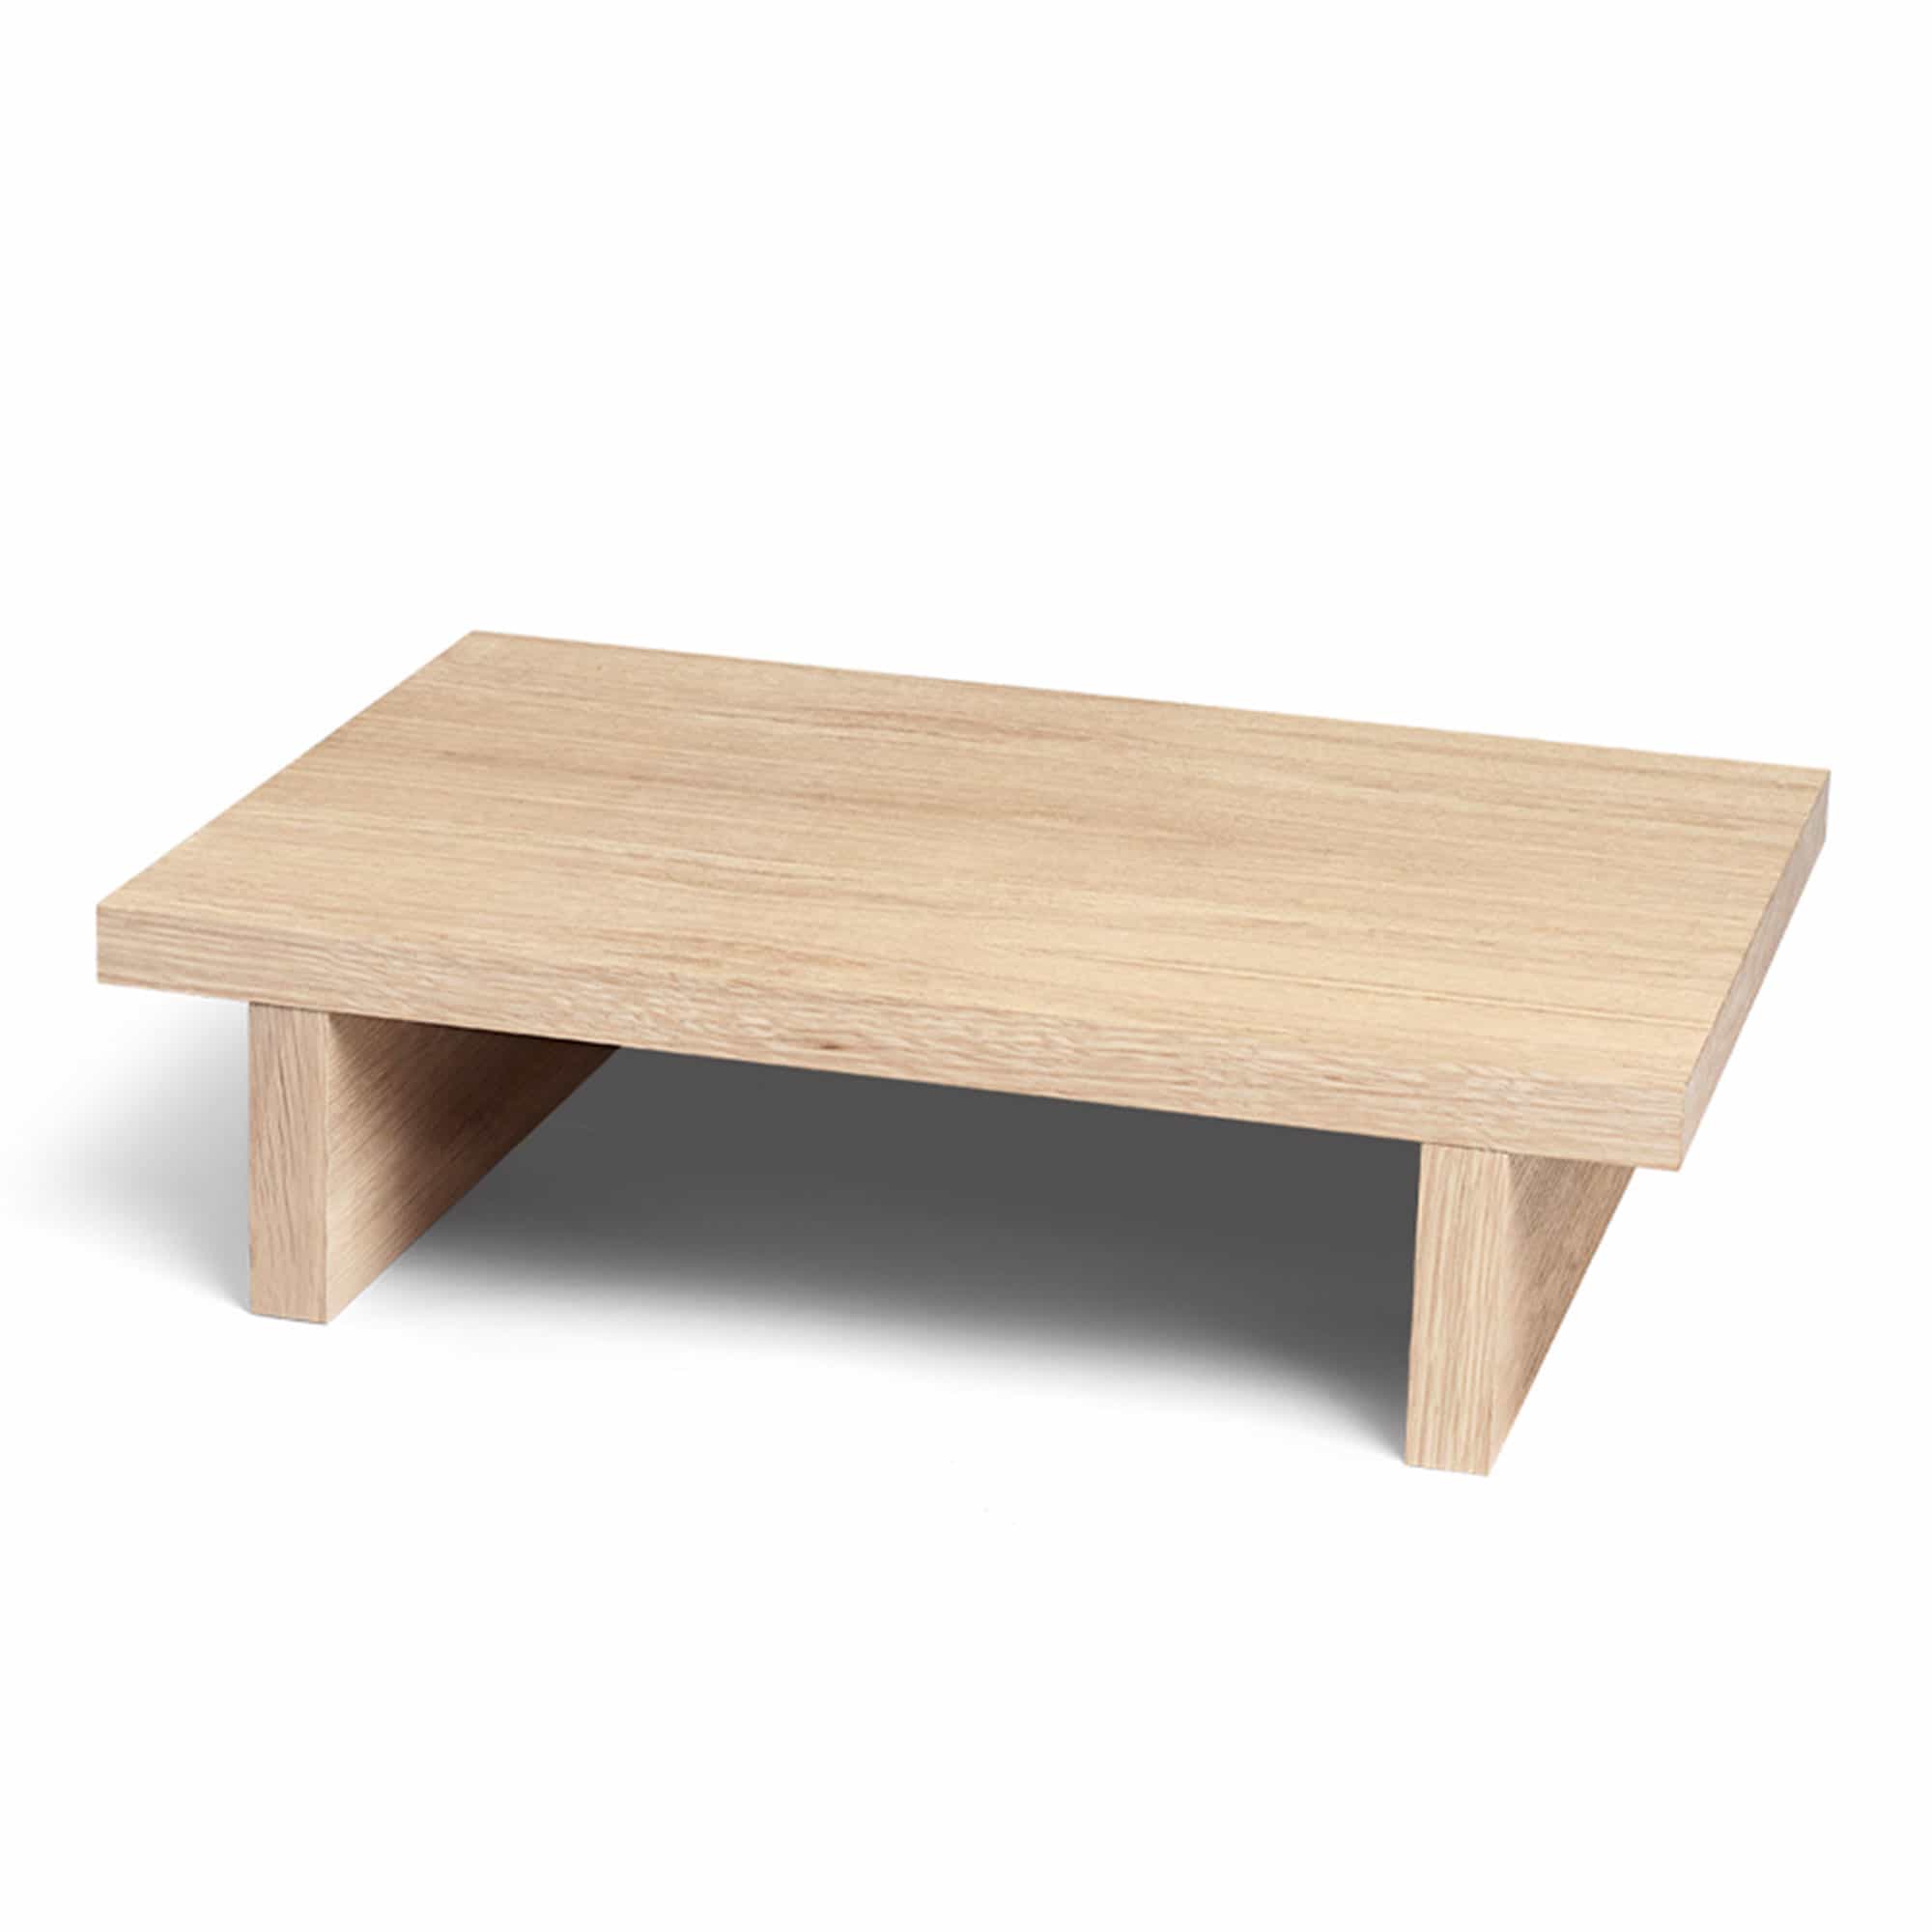 Kona Side Table